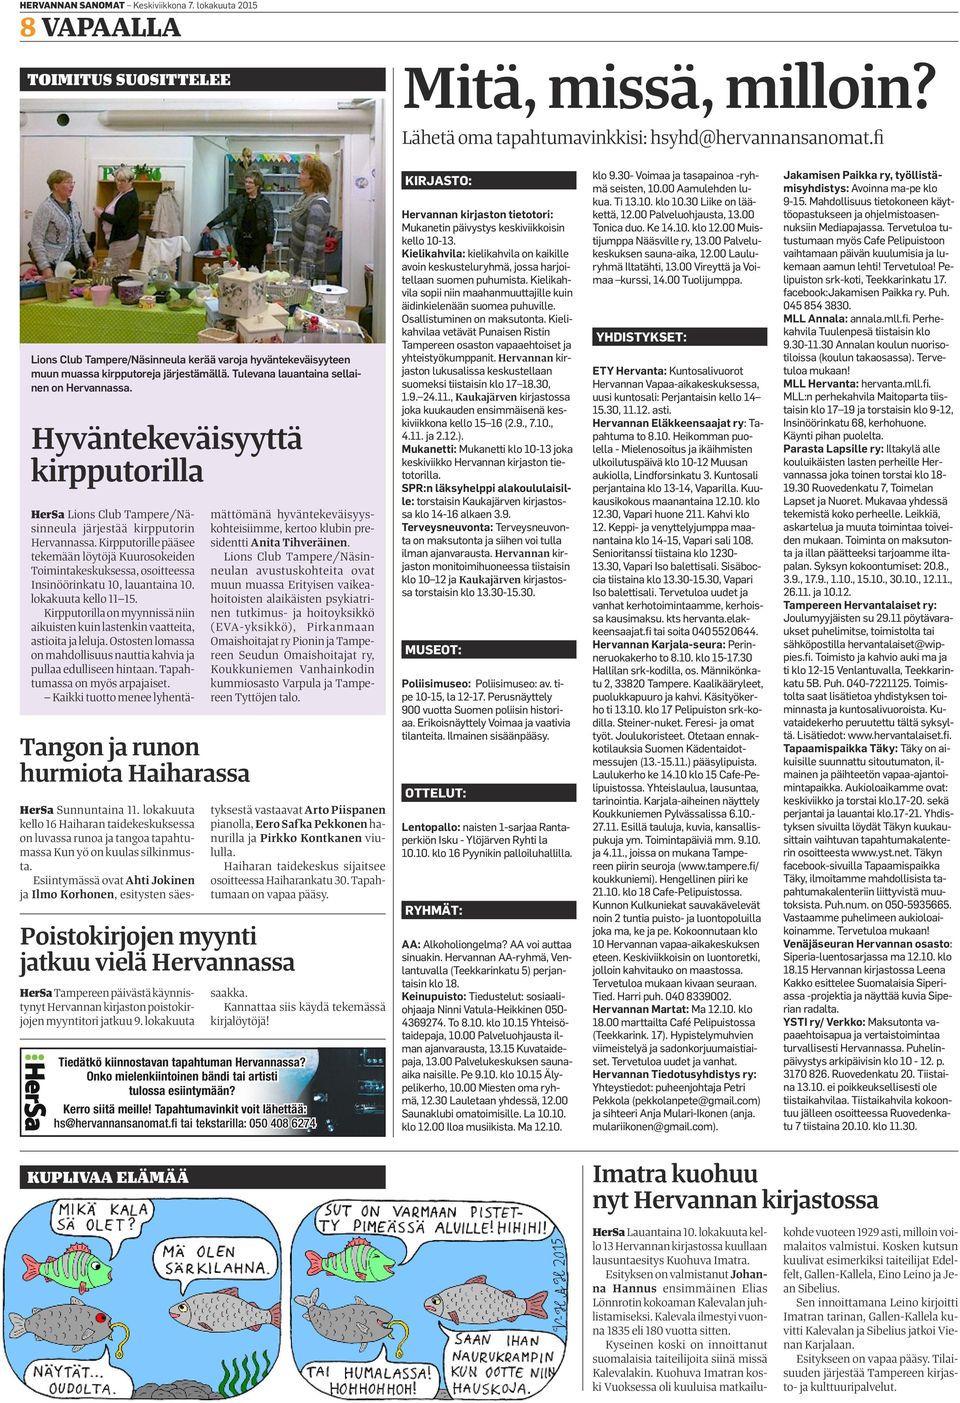 Hyväntekeväisyyttä kirpputorilla Tangon ja runon hurmiota Haiharassa HerSa Lions Club Tampere/Näsinneula järjestää kirpputorin Hervannassa.